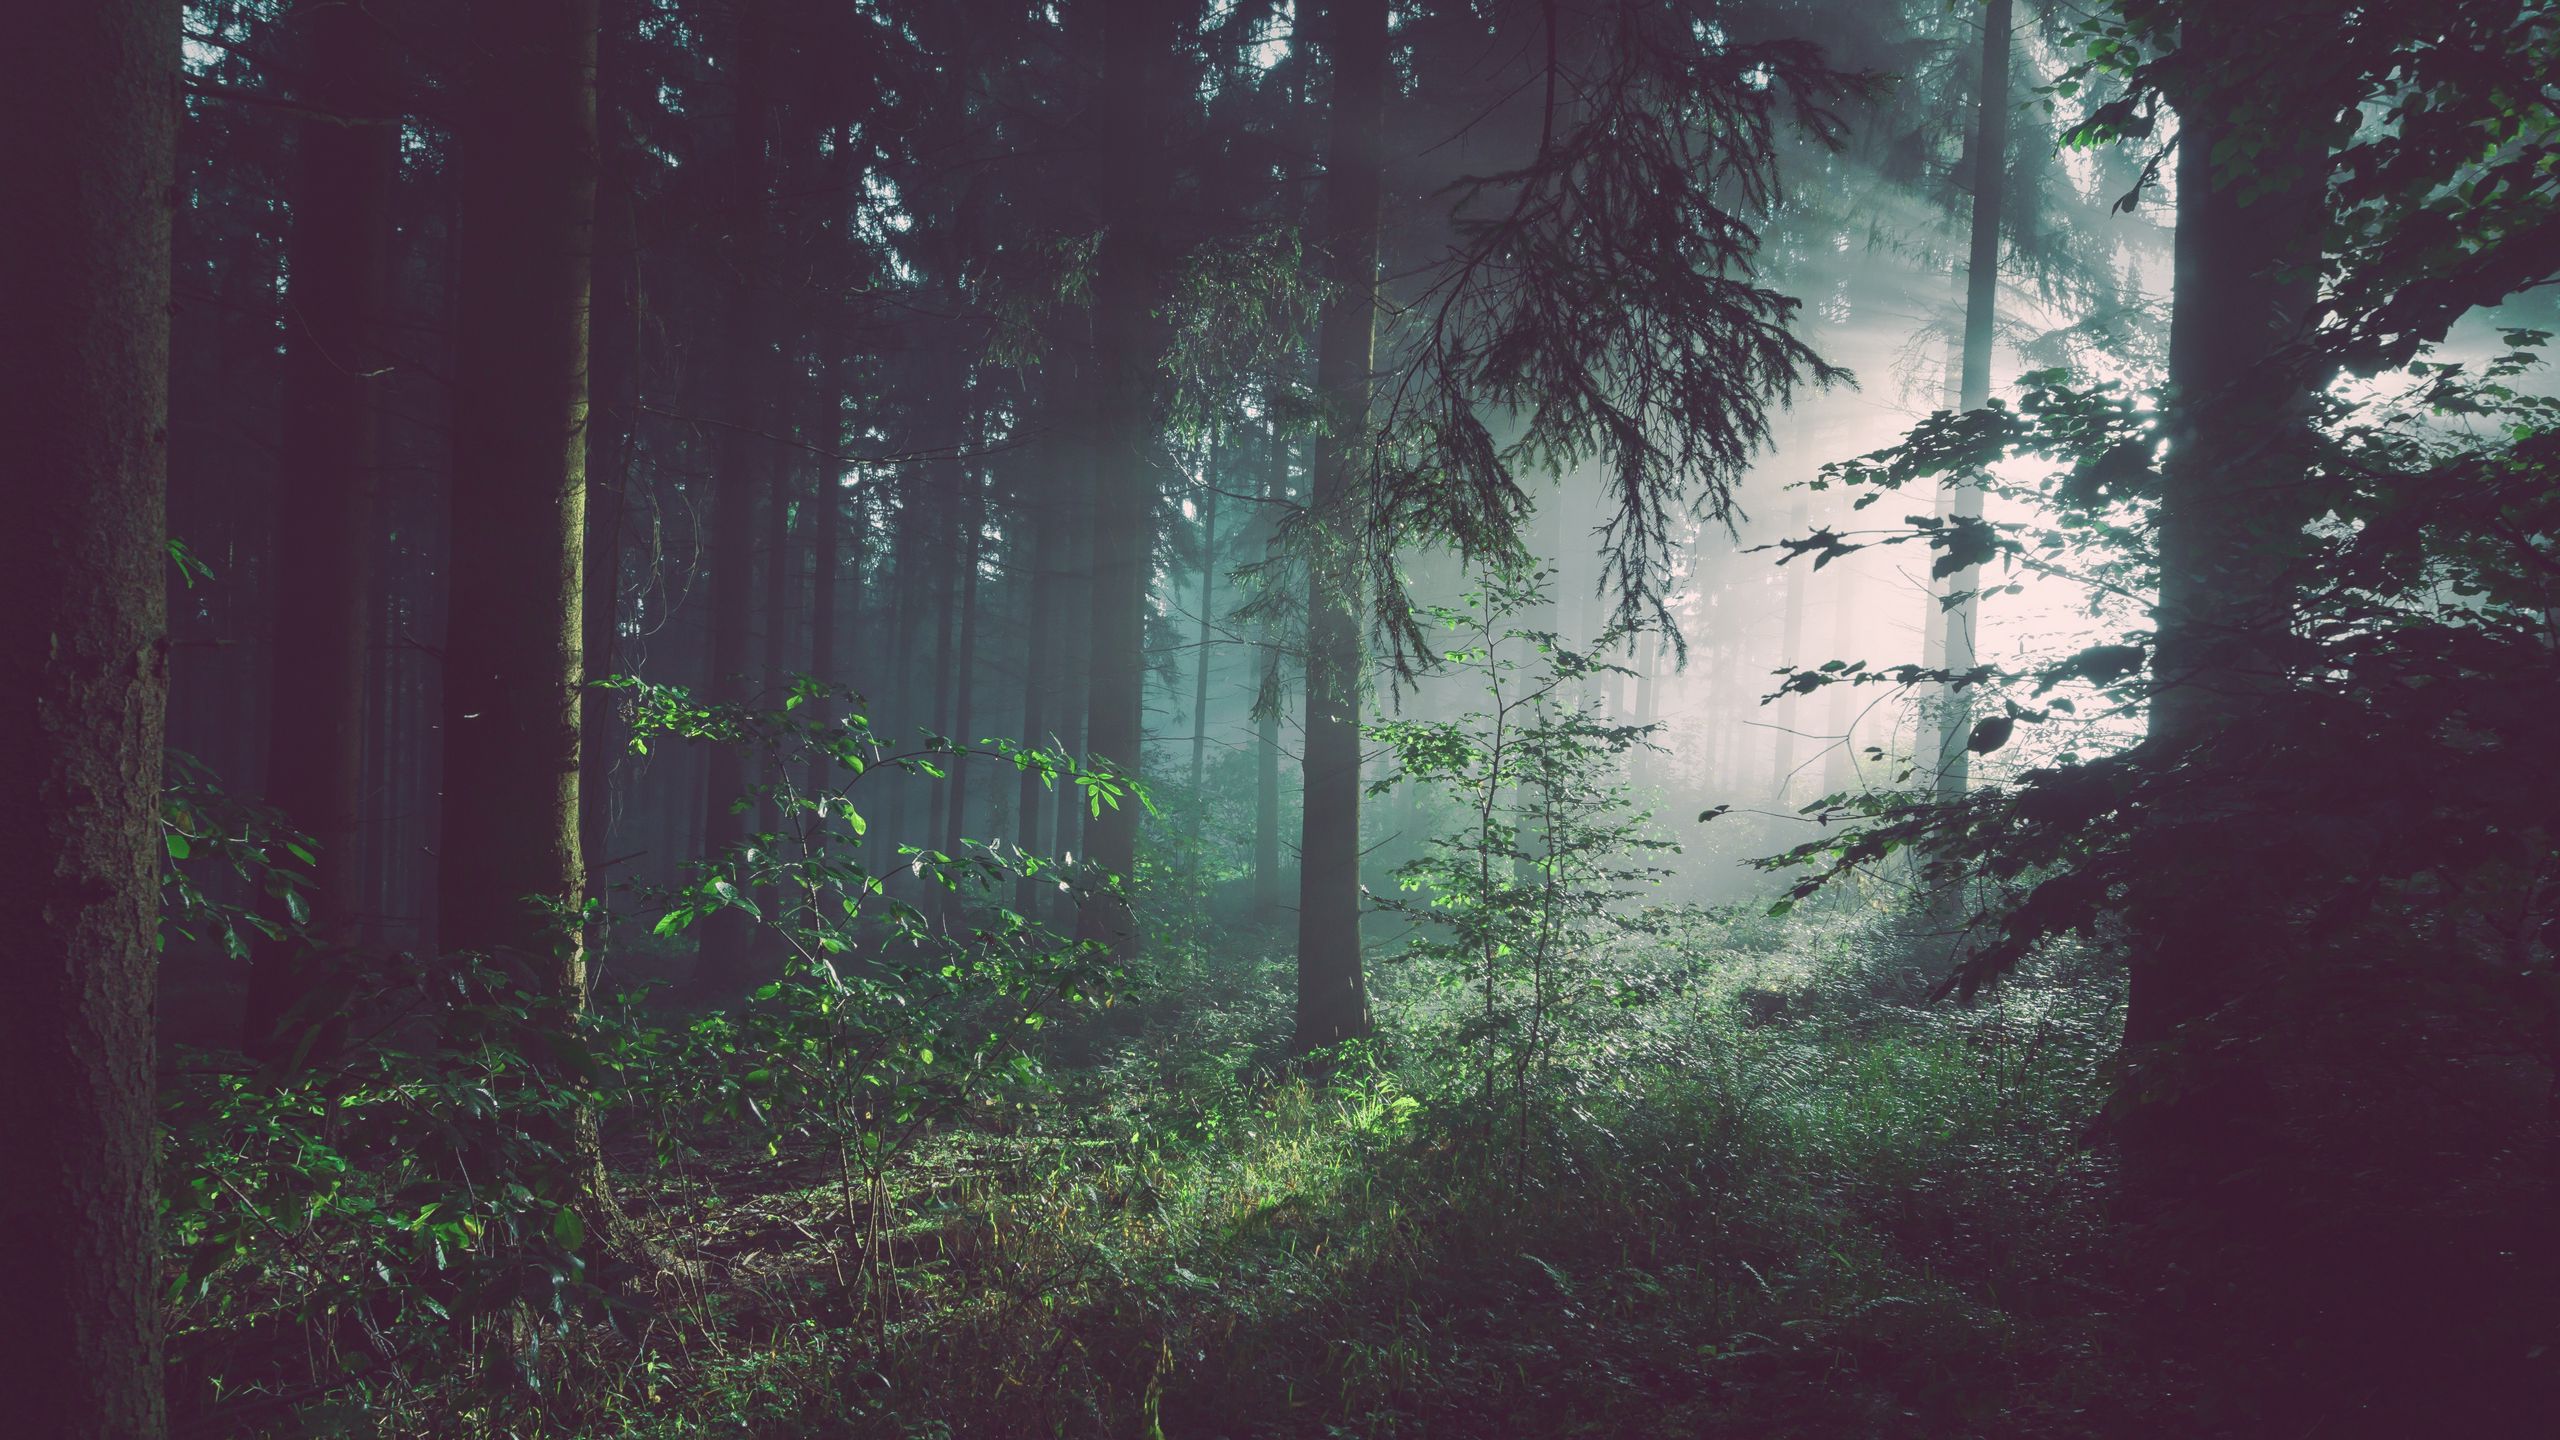 Bức tranh nền rừng sương mù này sẽ đưa bạn đến một thế giới rộng lớn nơi cây xanh đầy hoang sơ và tuyệt đẹp. Với không khí tĩnh lặng và mơ màng, bạn sẽ thấy tâm trí mình trở nên yên bình và sảng khoái hơn.